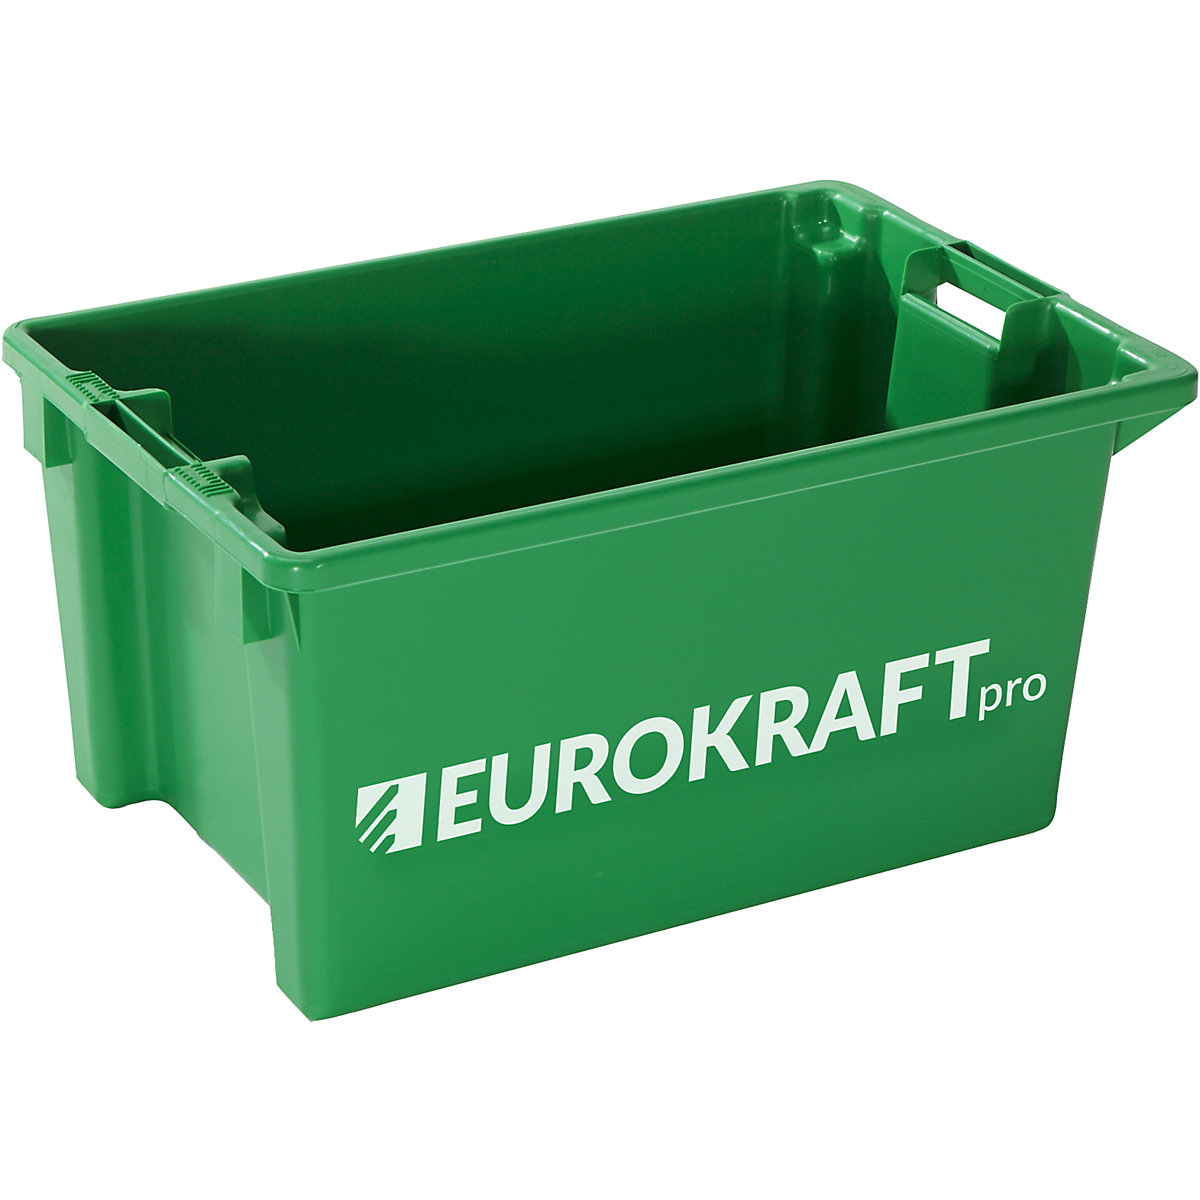 EUROKRAFTpro – Zasučni zaboj za zlaganje, prostornina 50 l, DE 3 kosi, zelena